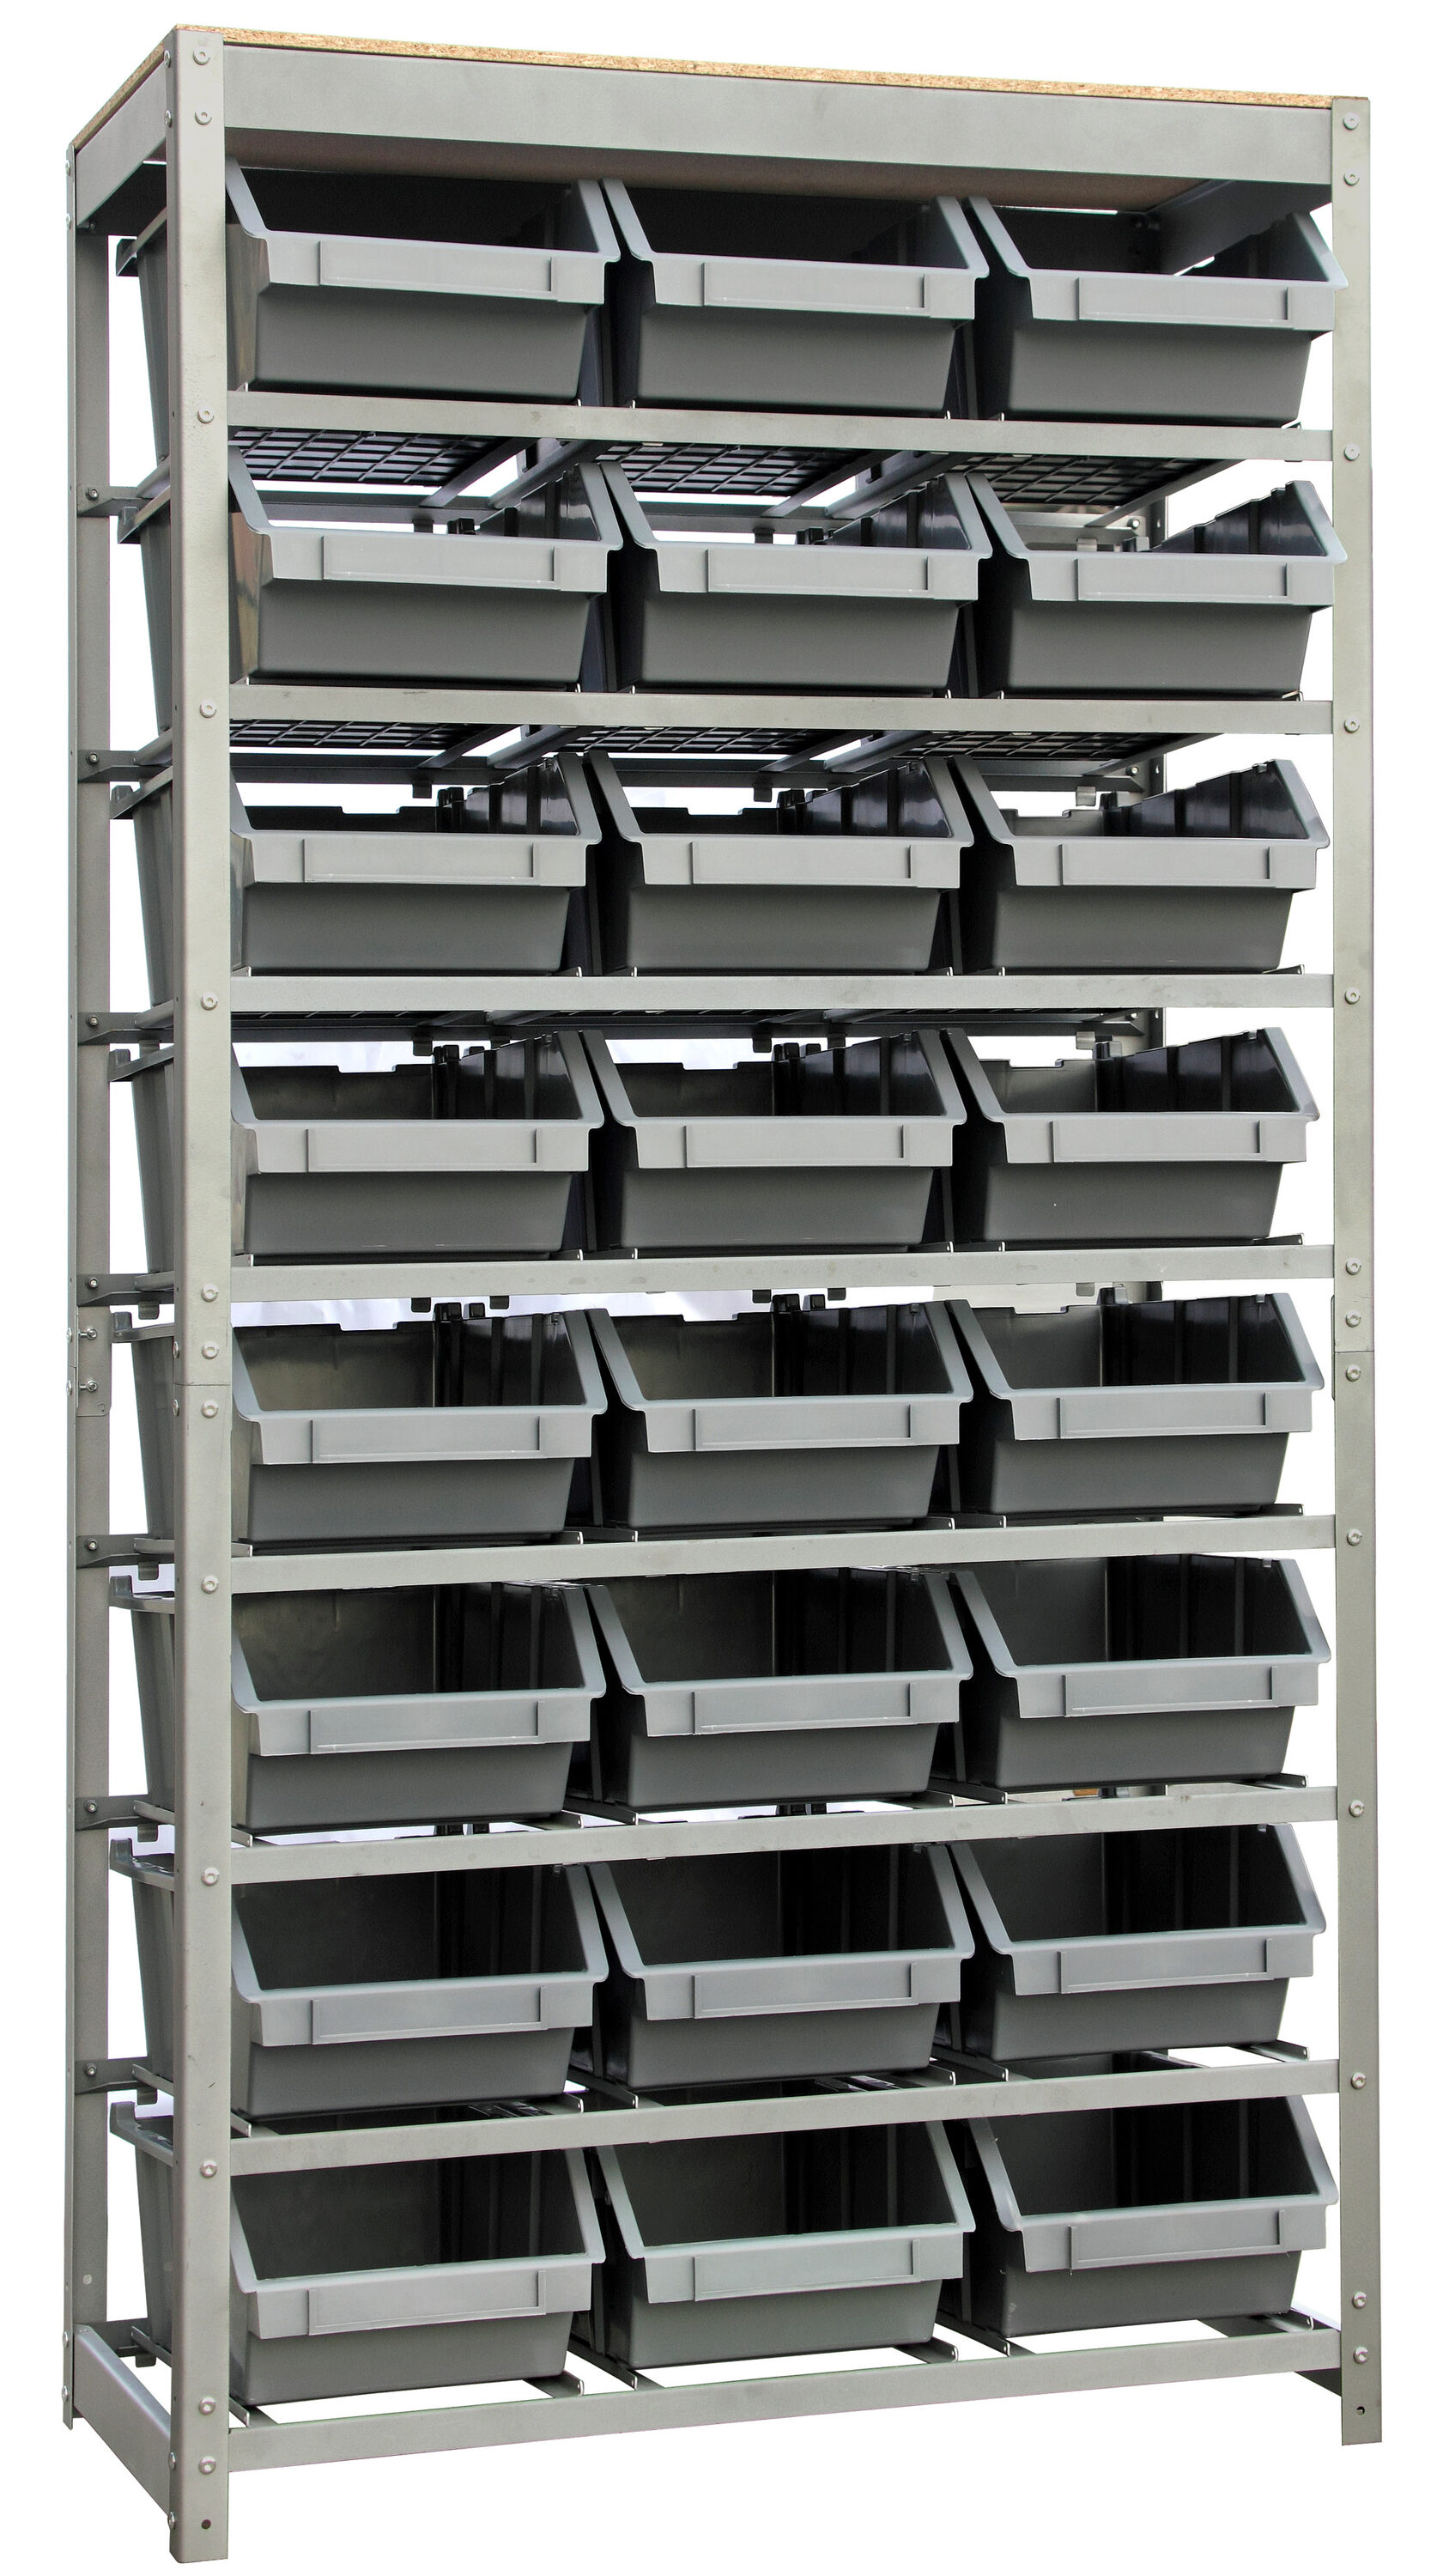 King's Rack Bin Rack Storage System Heavy Duty Steel Rack Organizer Shelving Unit w/ 22 Plastic Bins in 6 Tiers, Gray